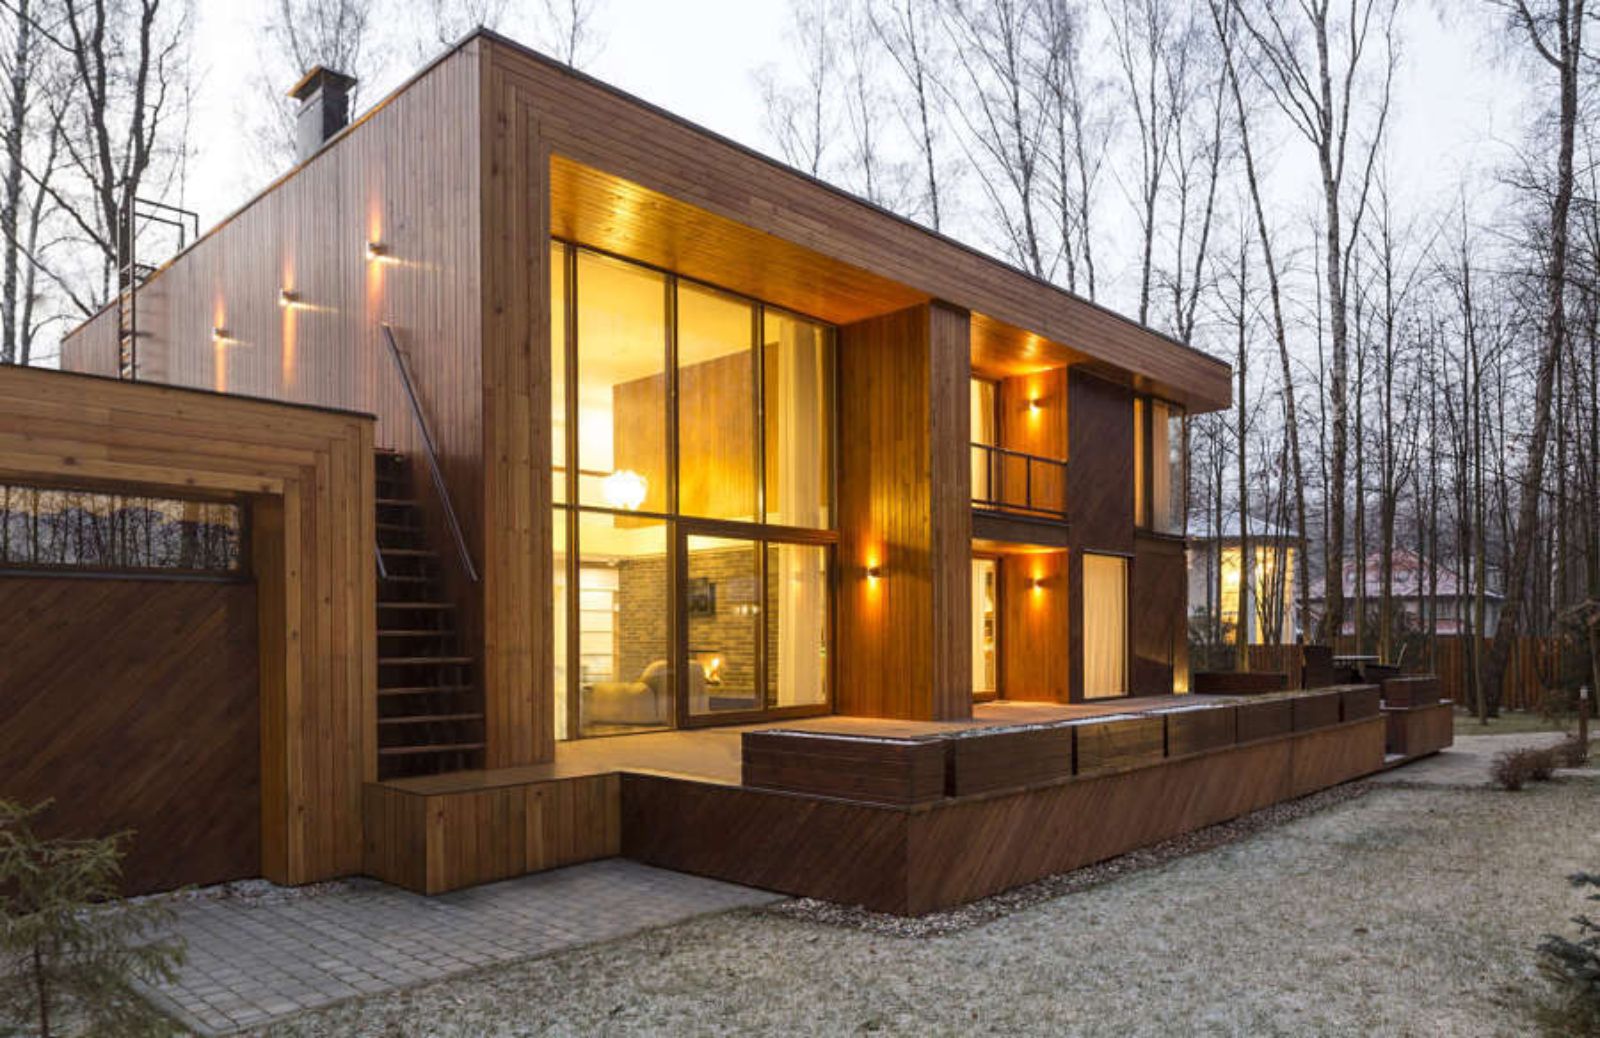 Abitare sostenibile: come vivere in una casa di legno 